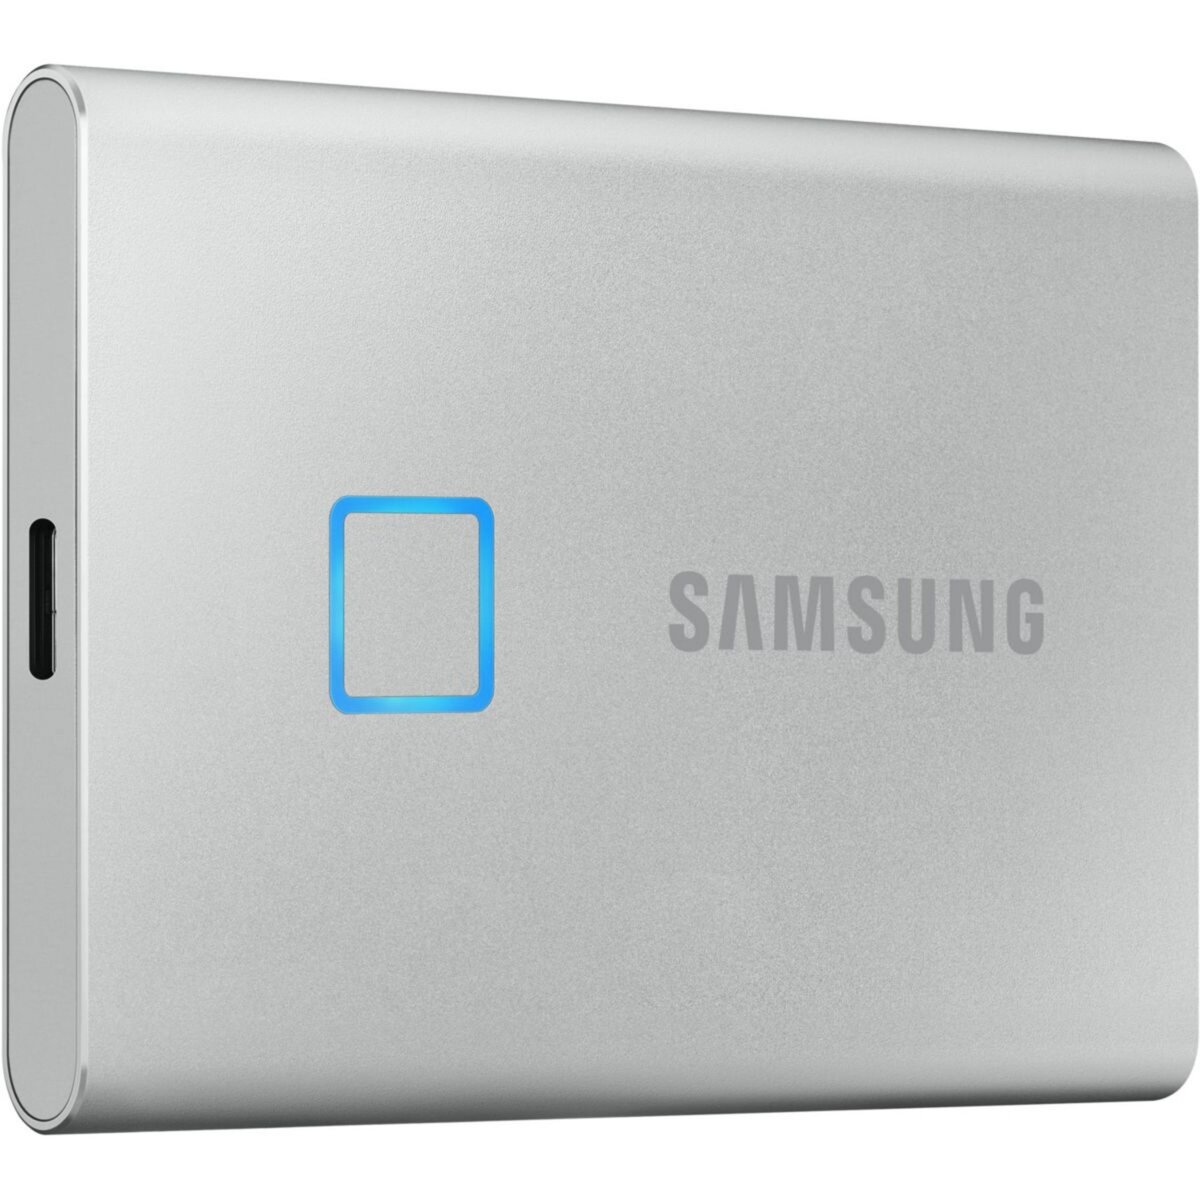 Samsung Disque dur SSD externe Pack T7 1To bleu + Etui pas cher